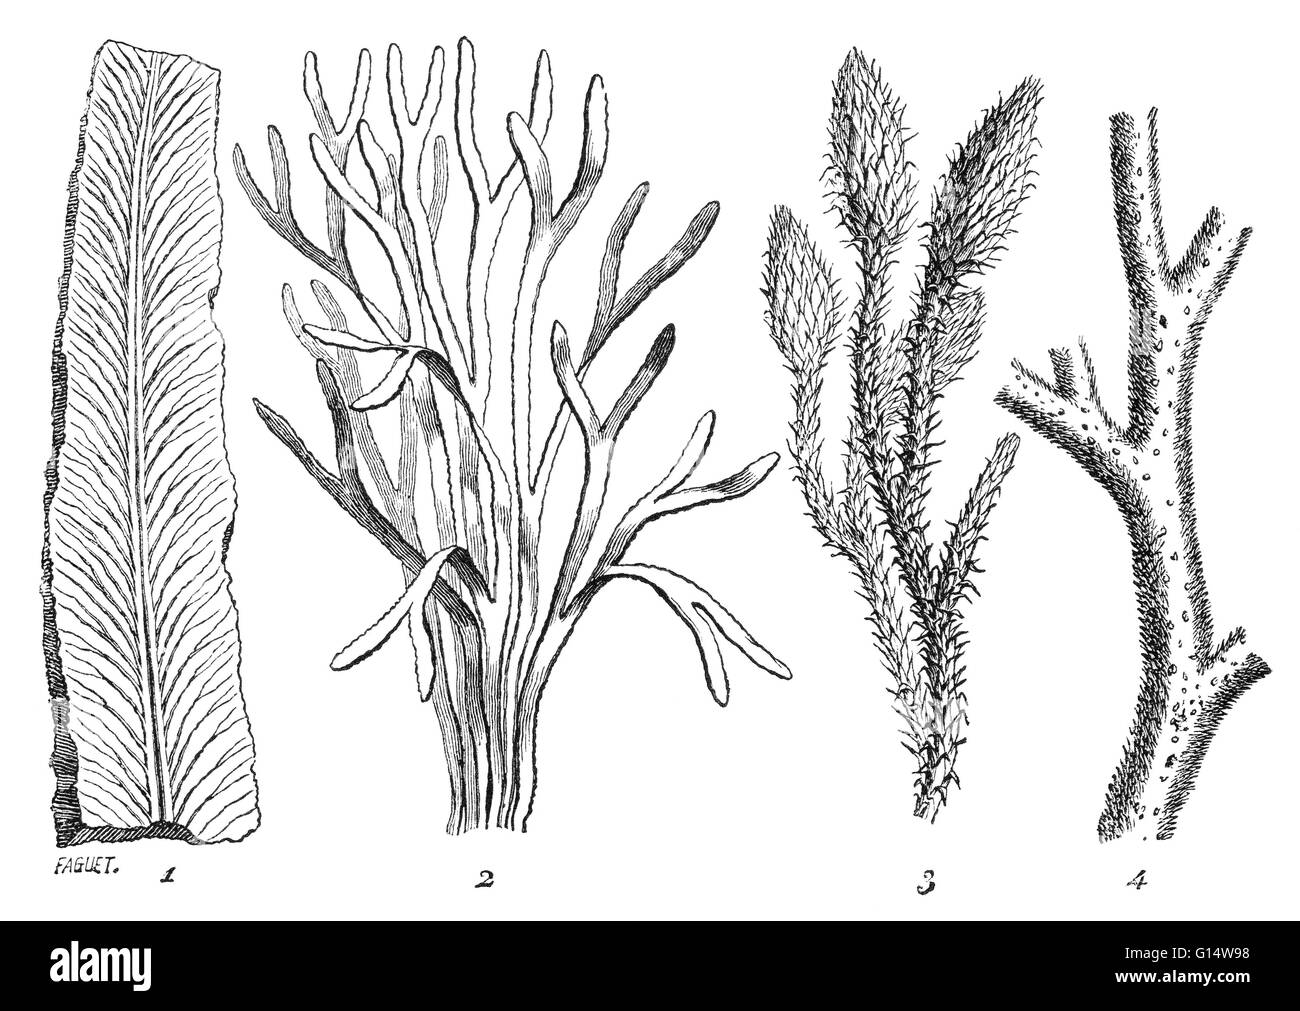 Algen und Moos-wie Pflanzen waren die häufigsten Flora während der Silurian Periode vor 400 Millionen Jahren. Illustration von Louis Figuiers die Welt vor der Sintflut, 1867 amerikanische Ausgabe. Stockfoto